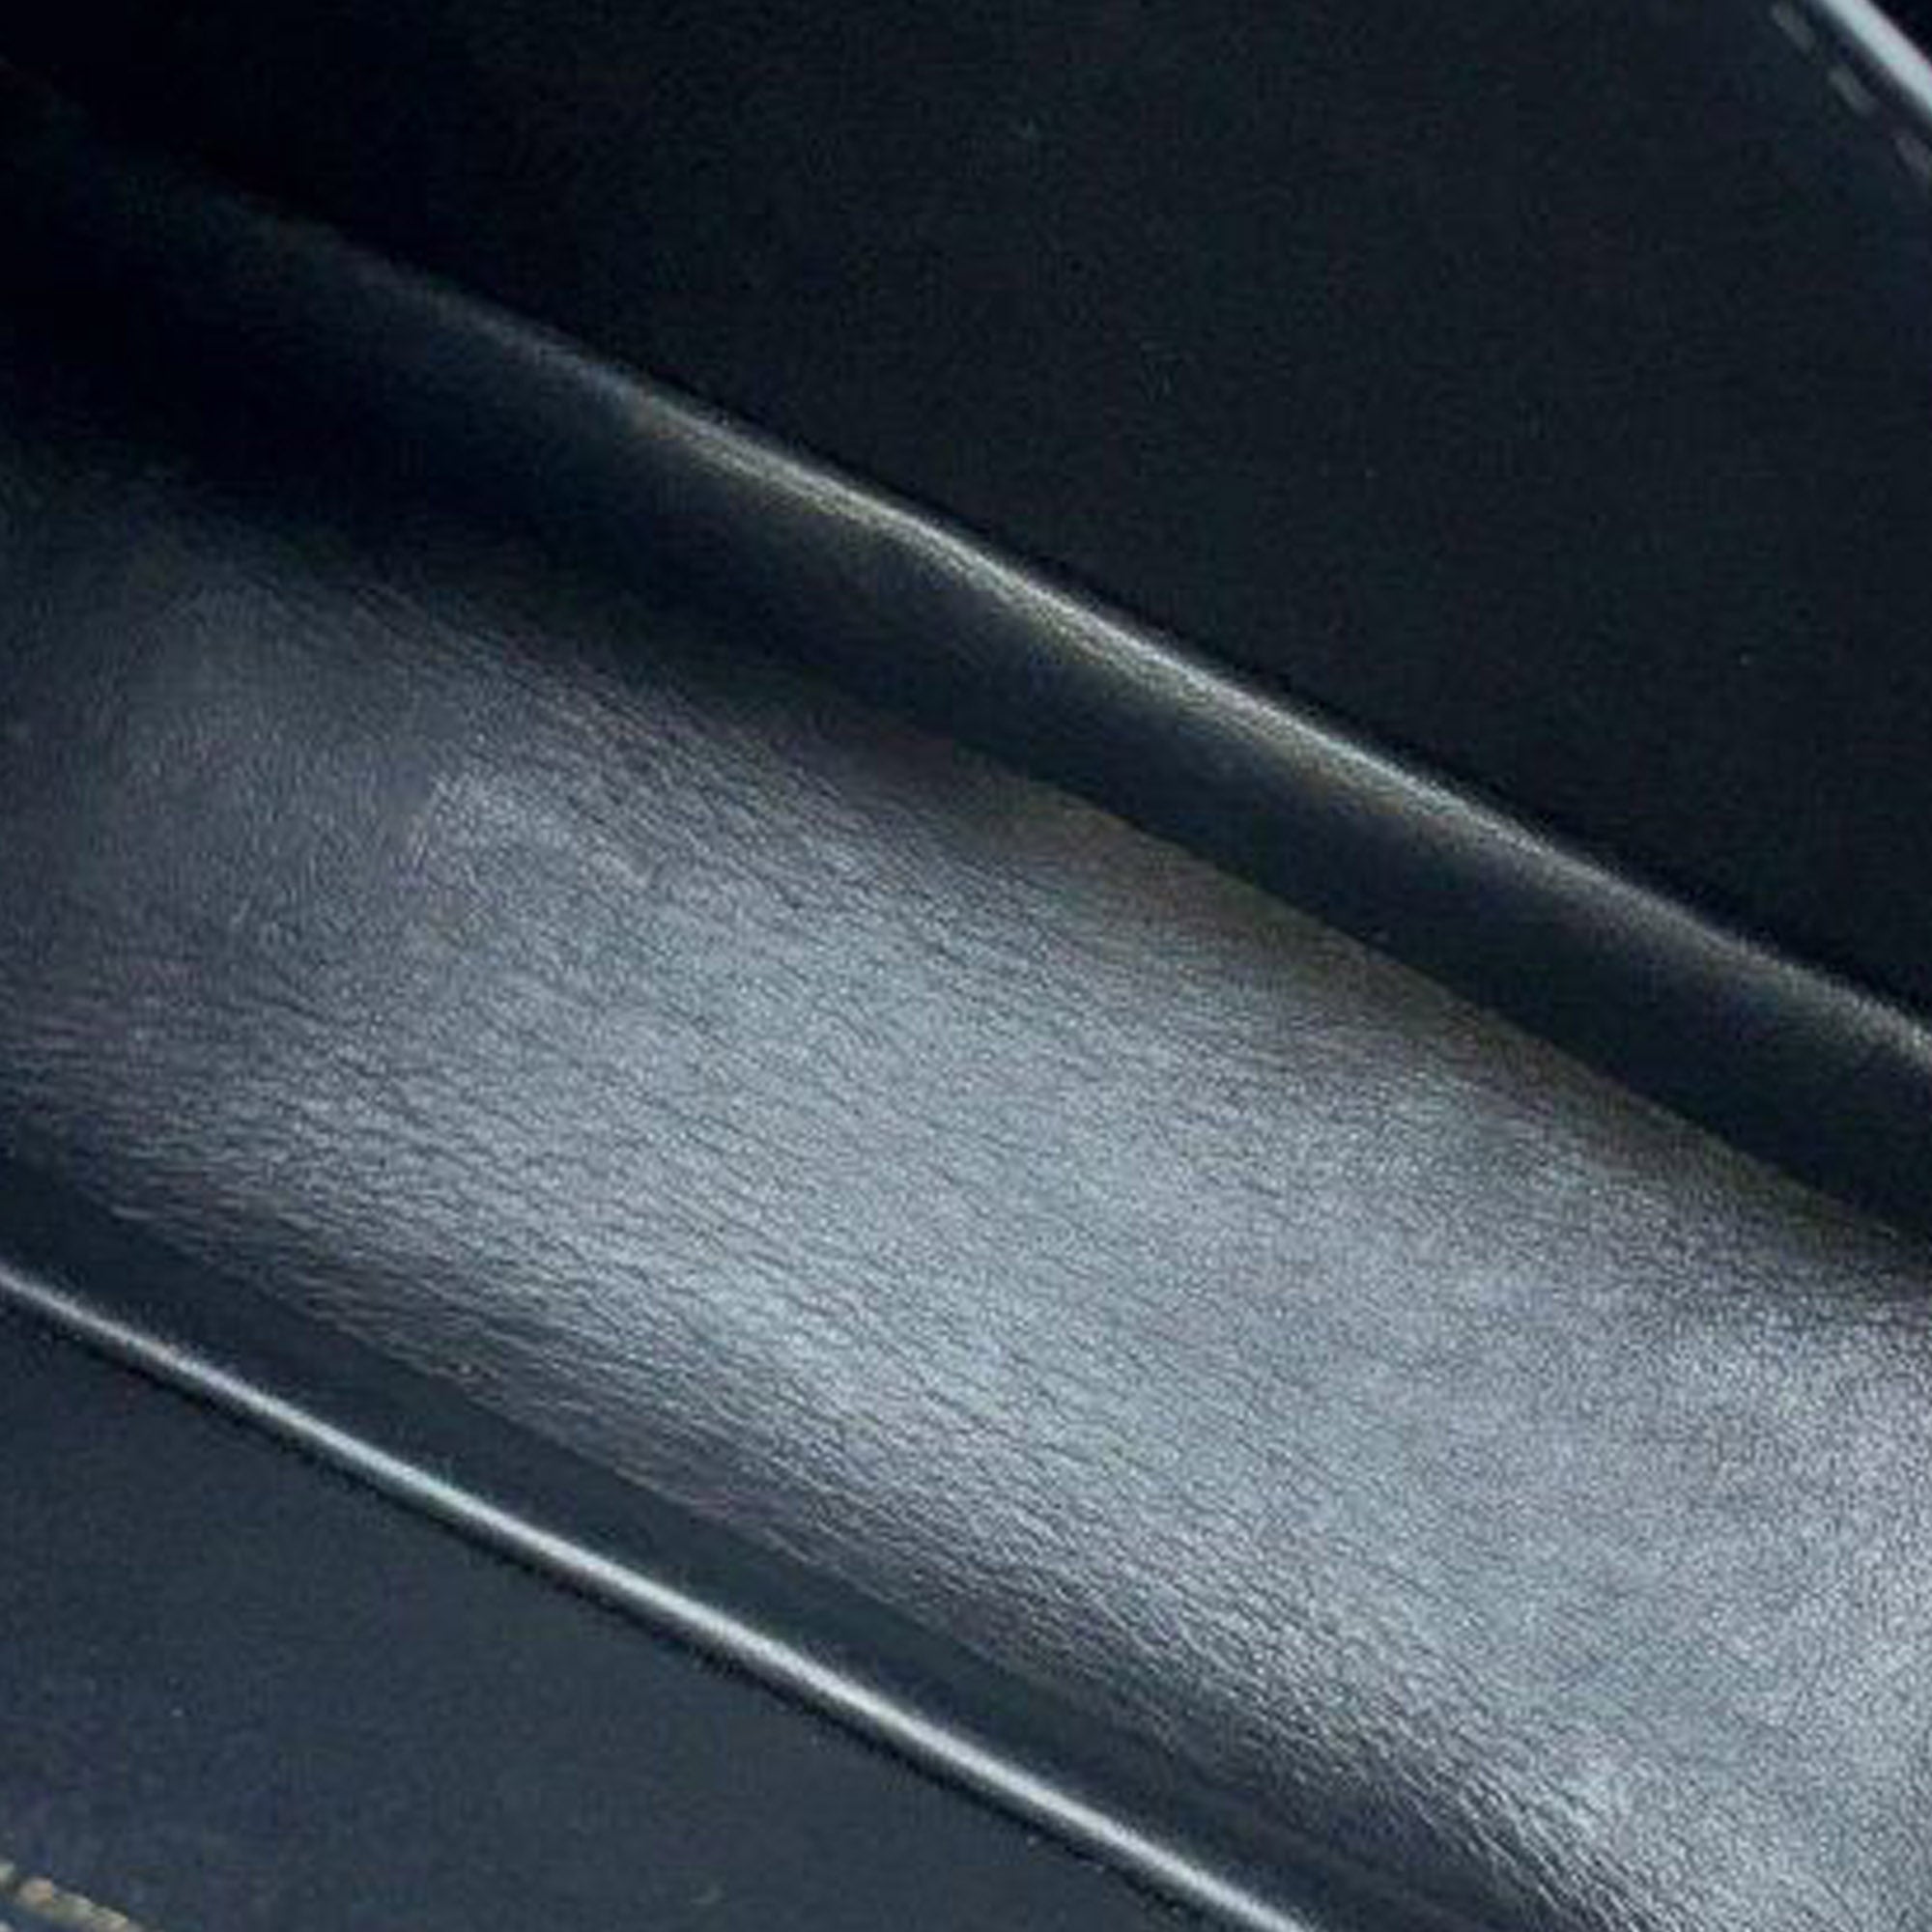 100% Authentic Louis Vuitton Neo Vivienne M54057 Black Leather